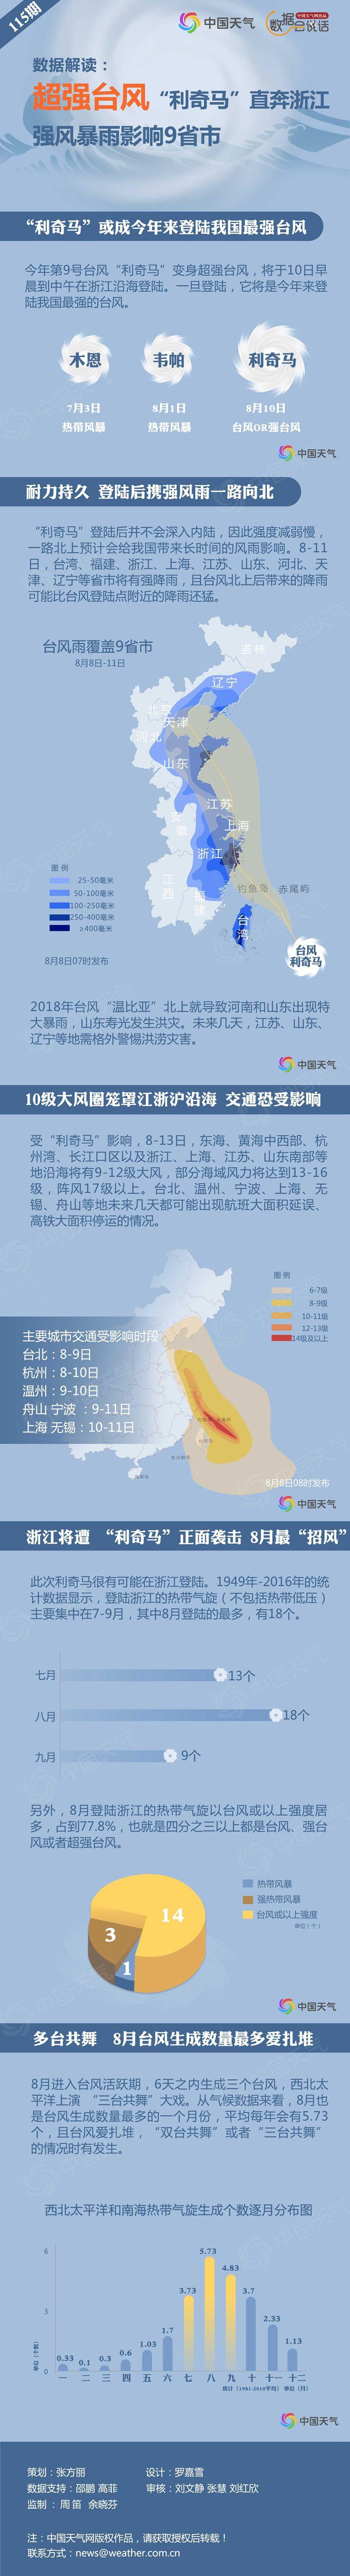 图解：“利奇马”成今年风王 强风暴雨将影响9省市